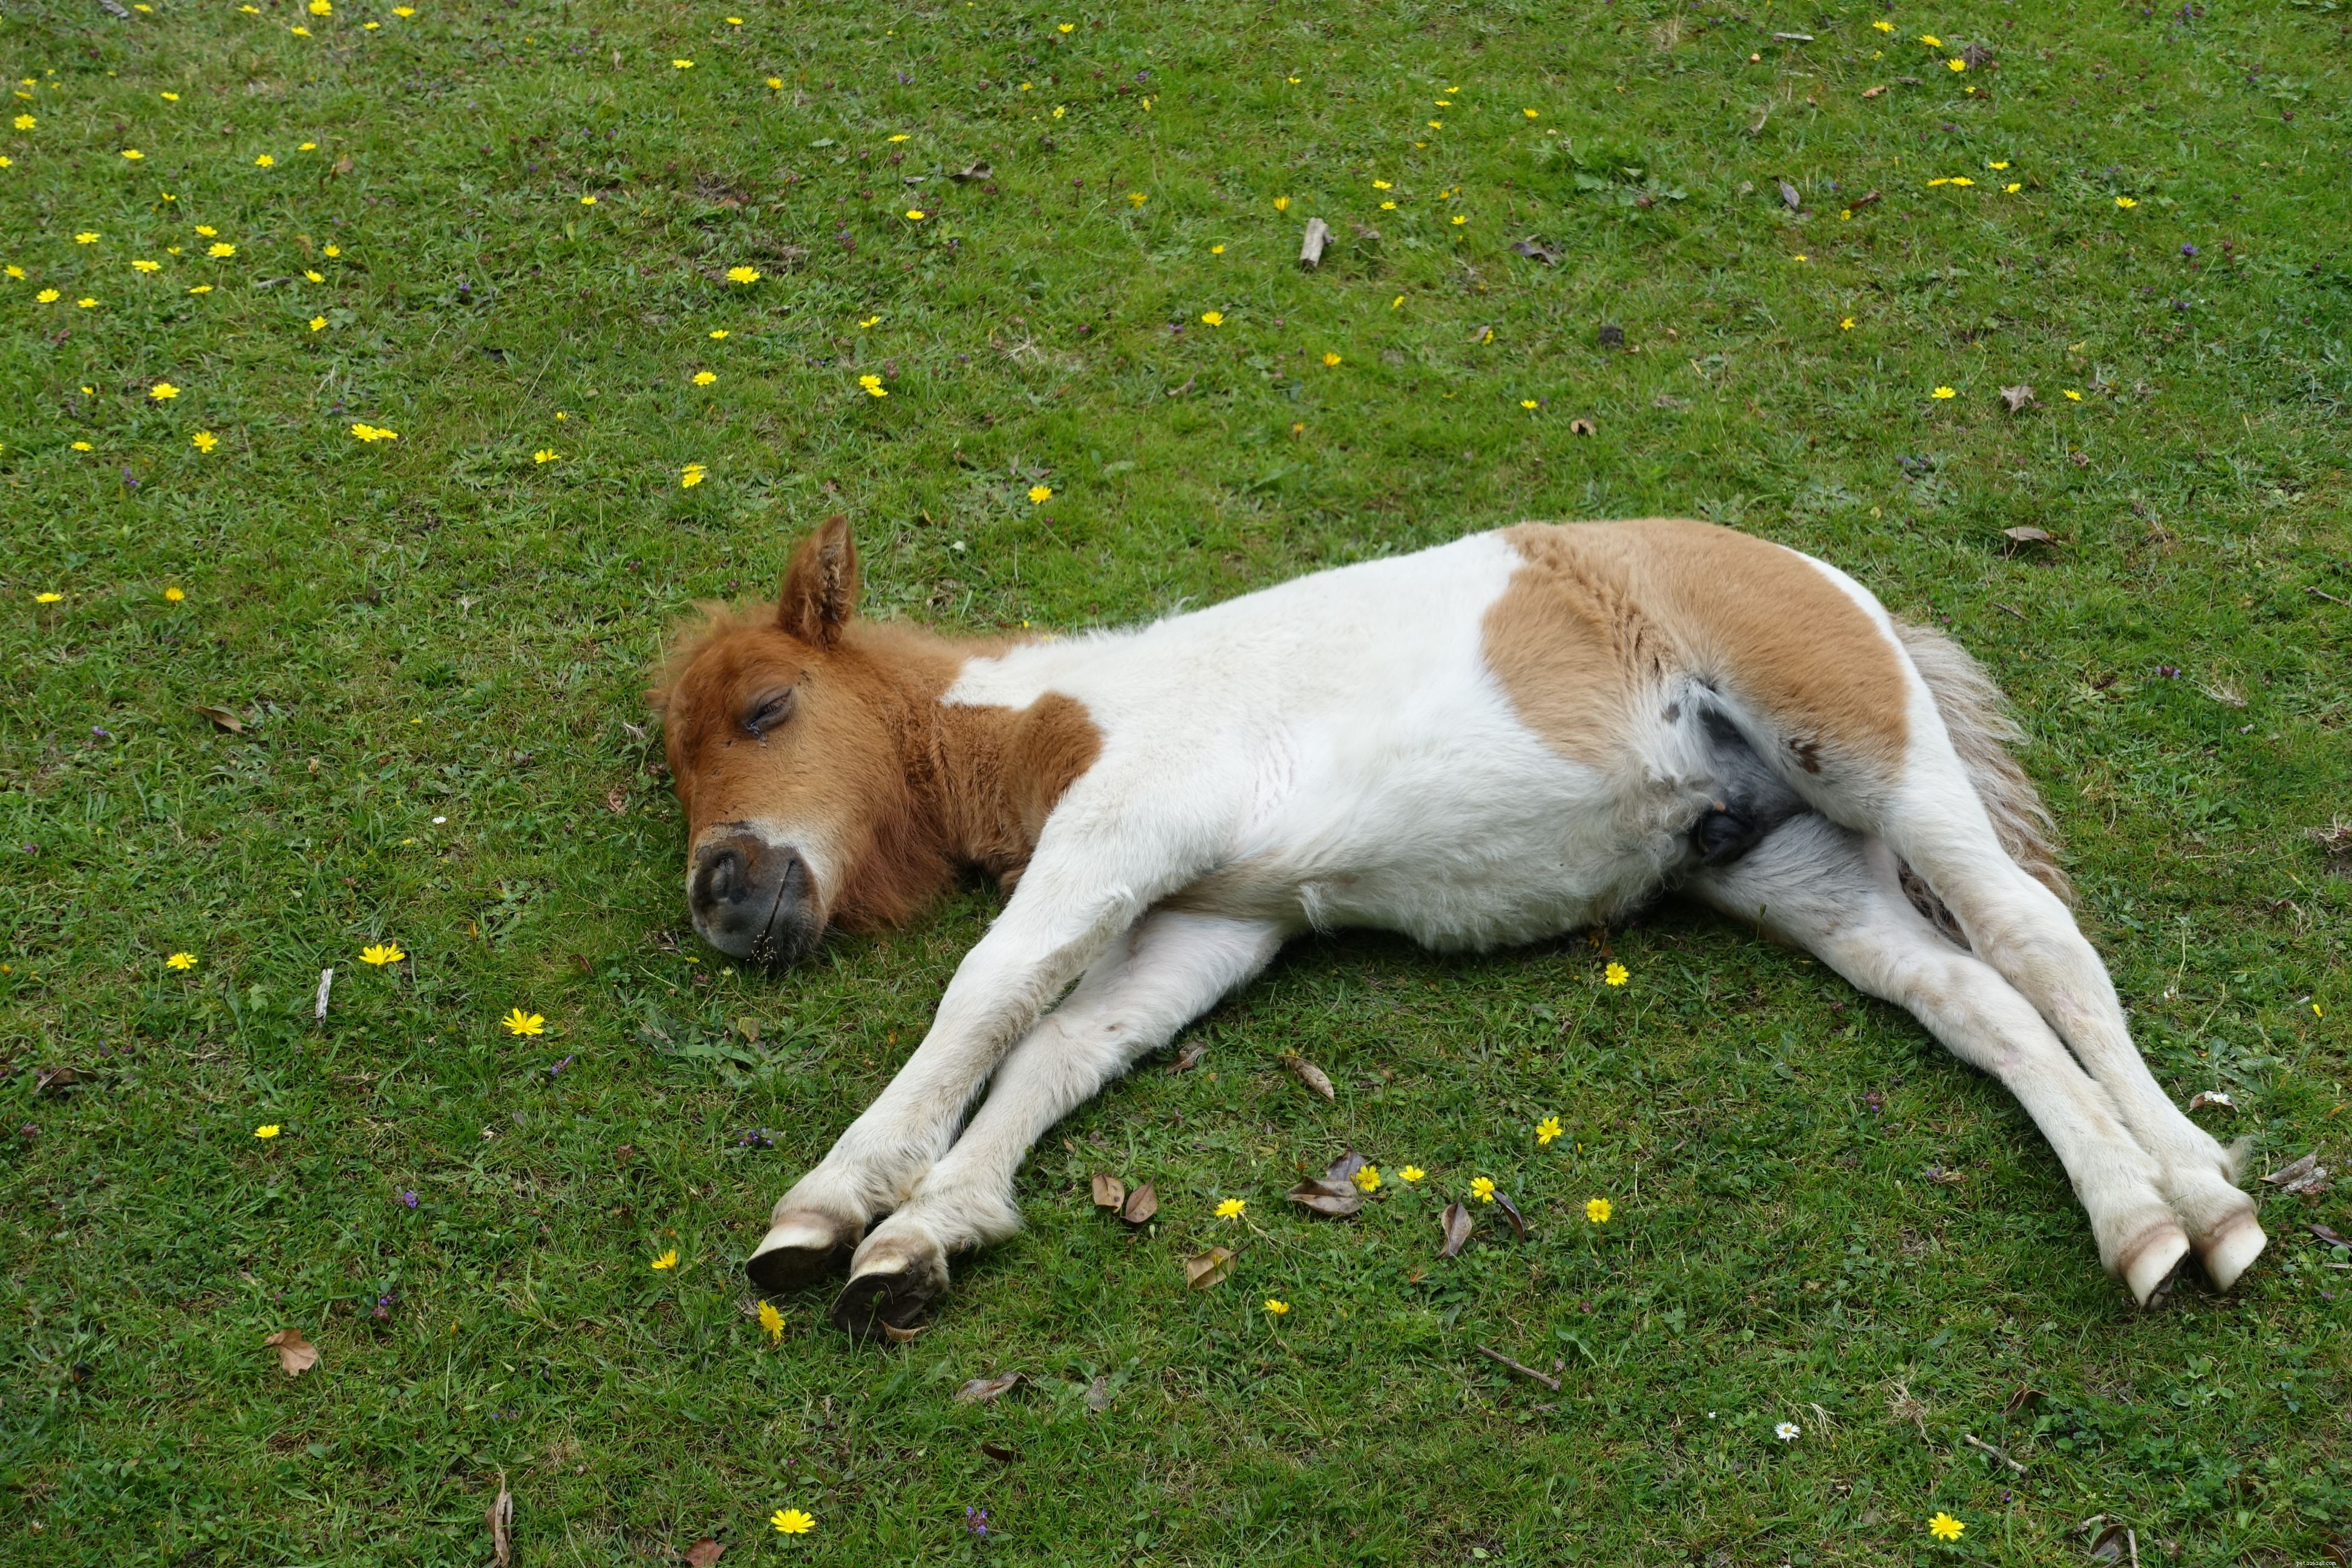 Savez-vous comment les chevaux dorment ?